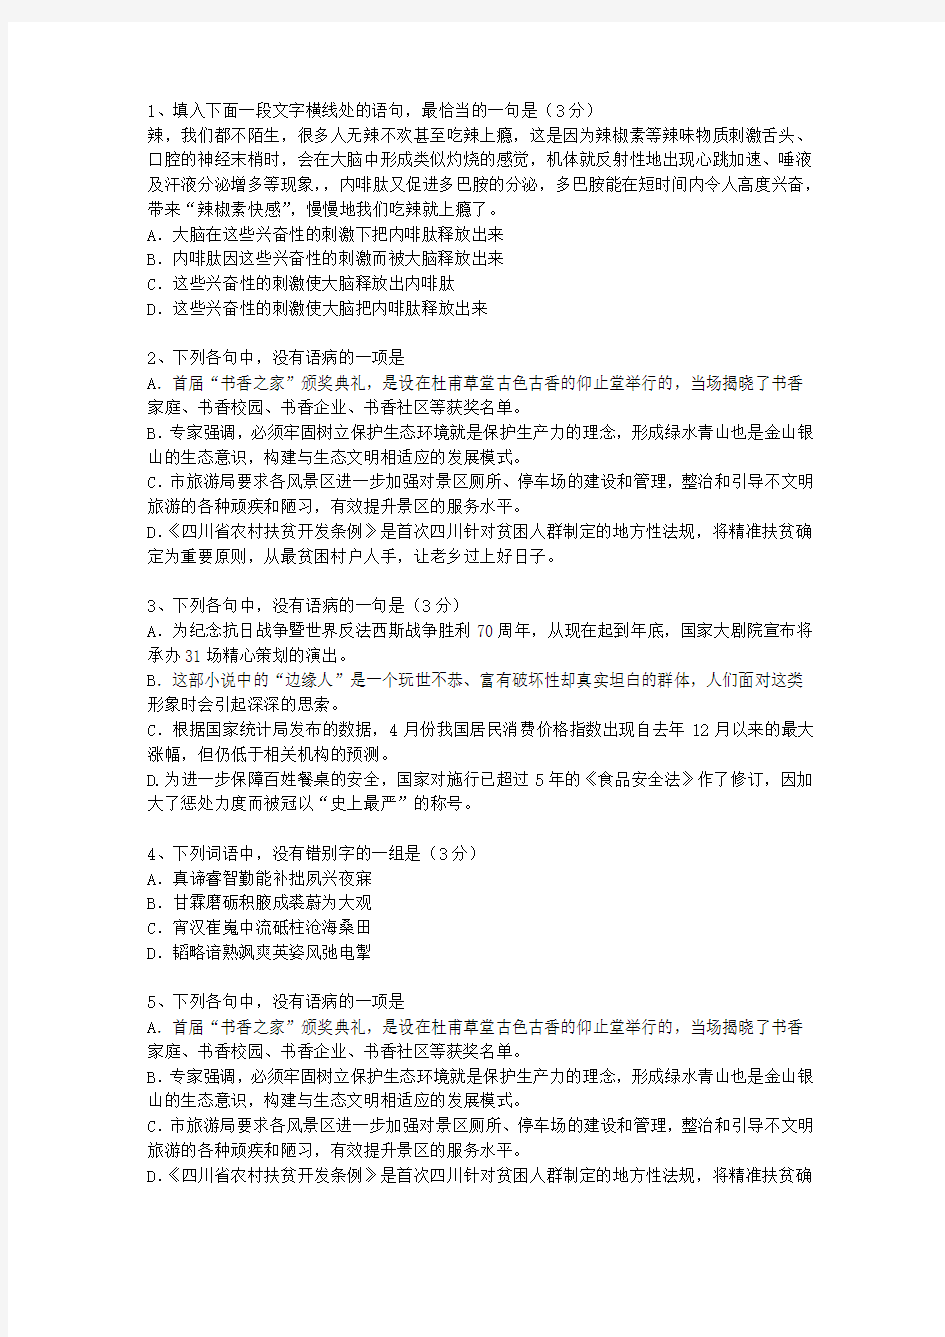 2014青海省高考语文试卷汇总最新考试试题库